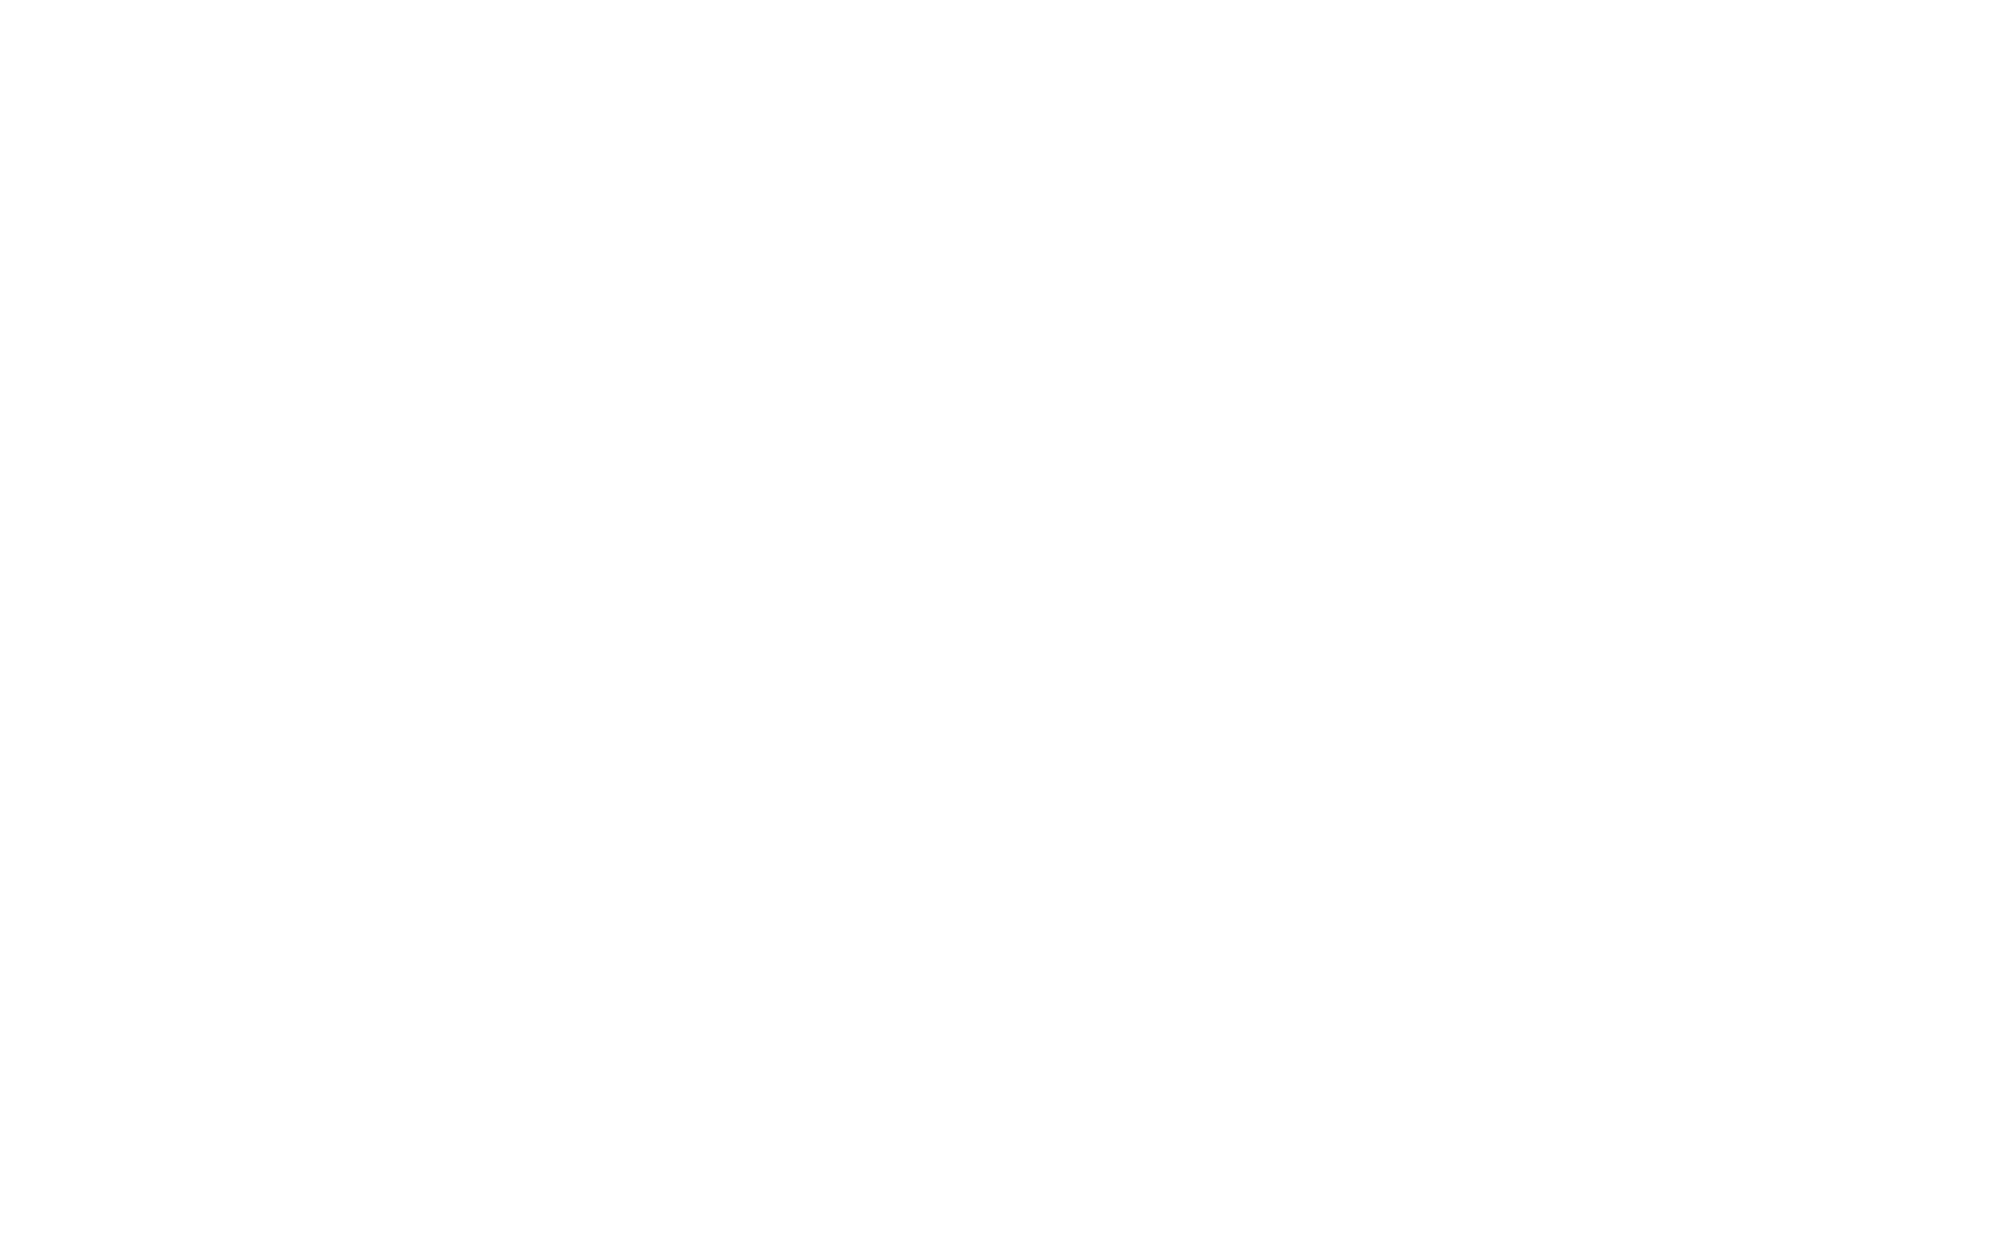 Marca do Guia VOX de Sustentação Oral.